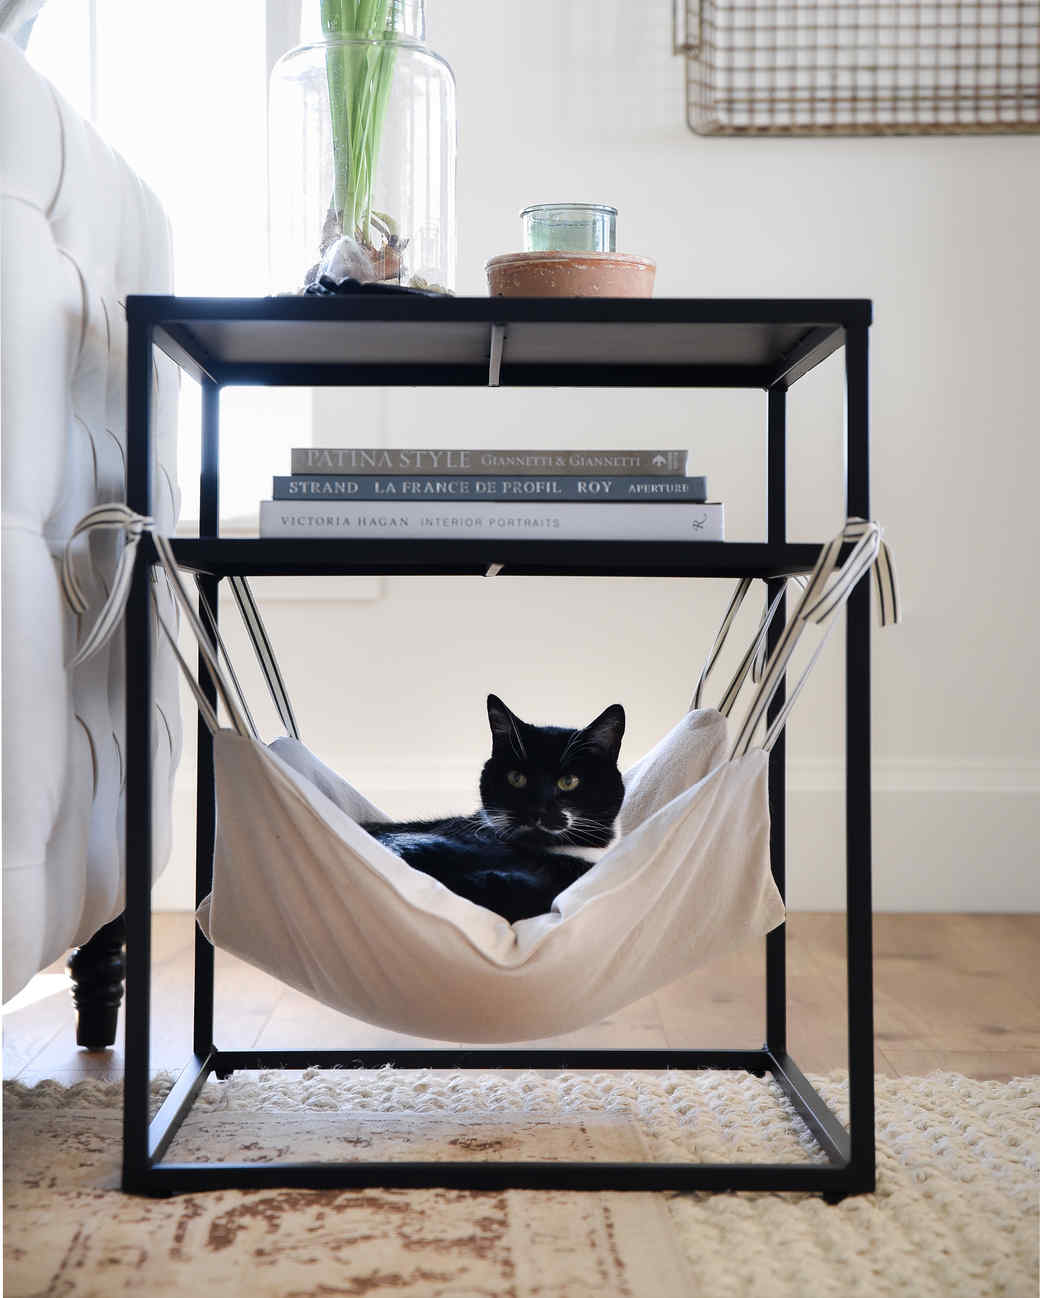 cat hammock under table